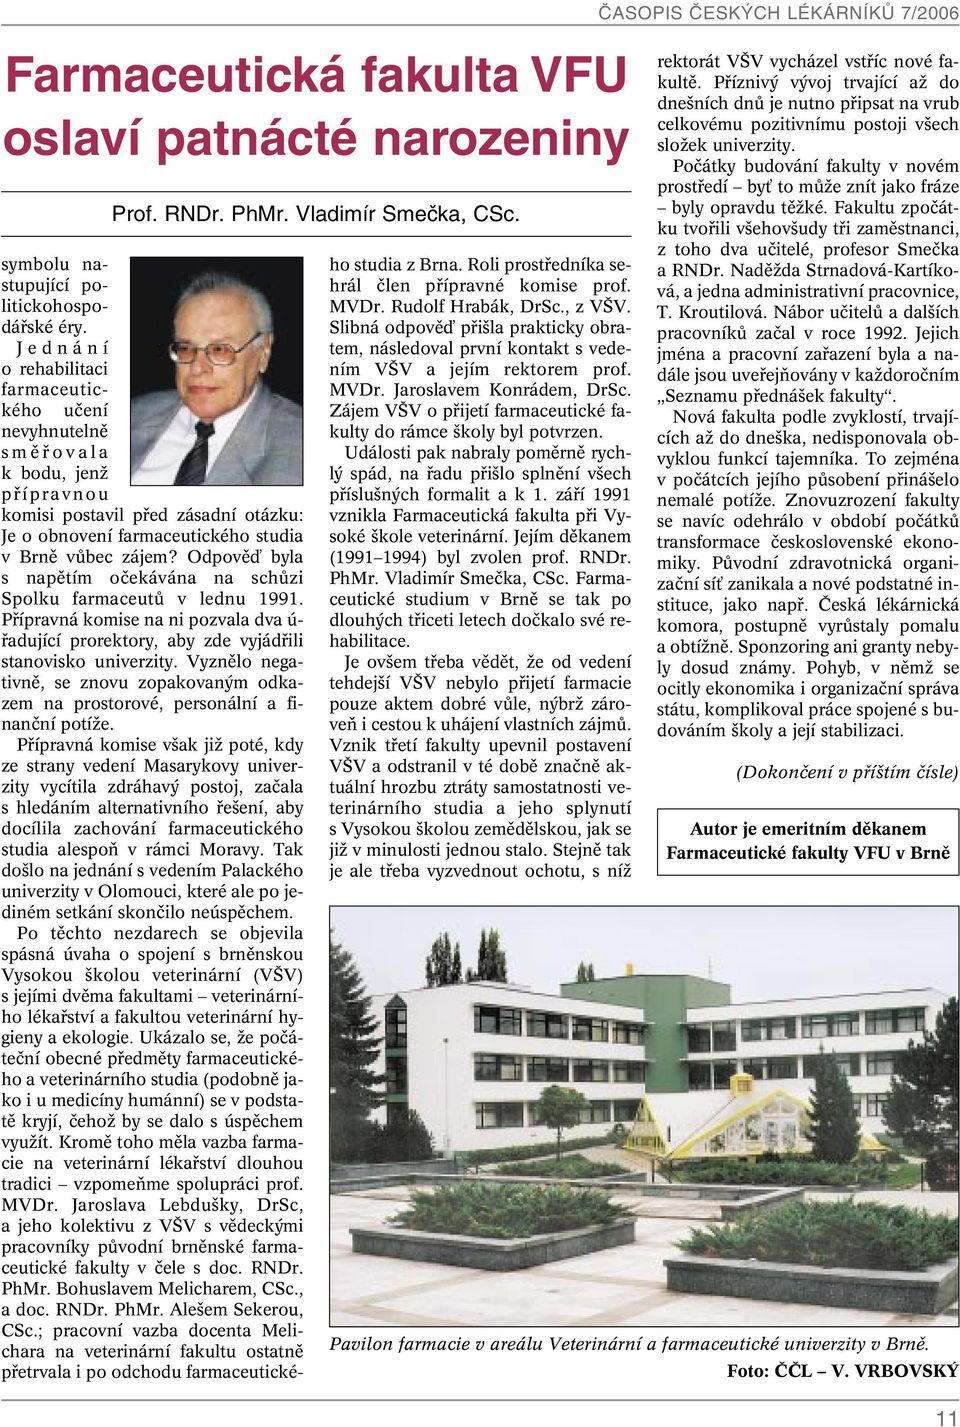 Odpovûì byla s napûtím oãekávána na schûzi Spolku farmaceutû v lednu 1991. Pfiípravná komise na ni pozvala dva ú- fiadující prorektory, aby zde vyjádfiili stanovisko univerzity.